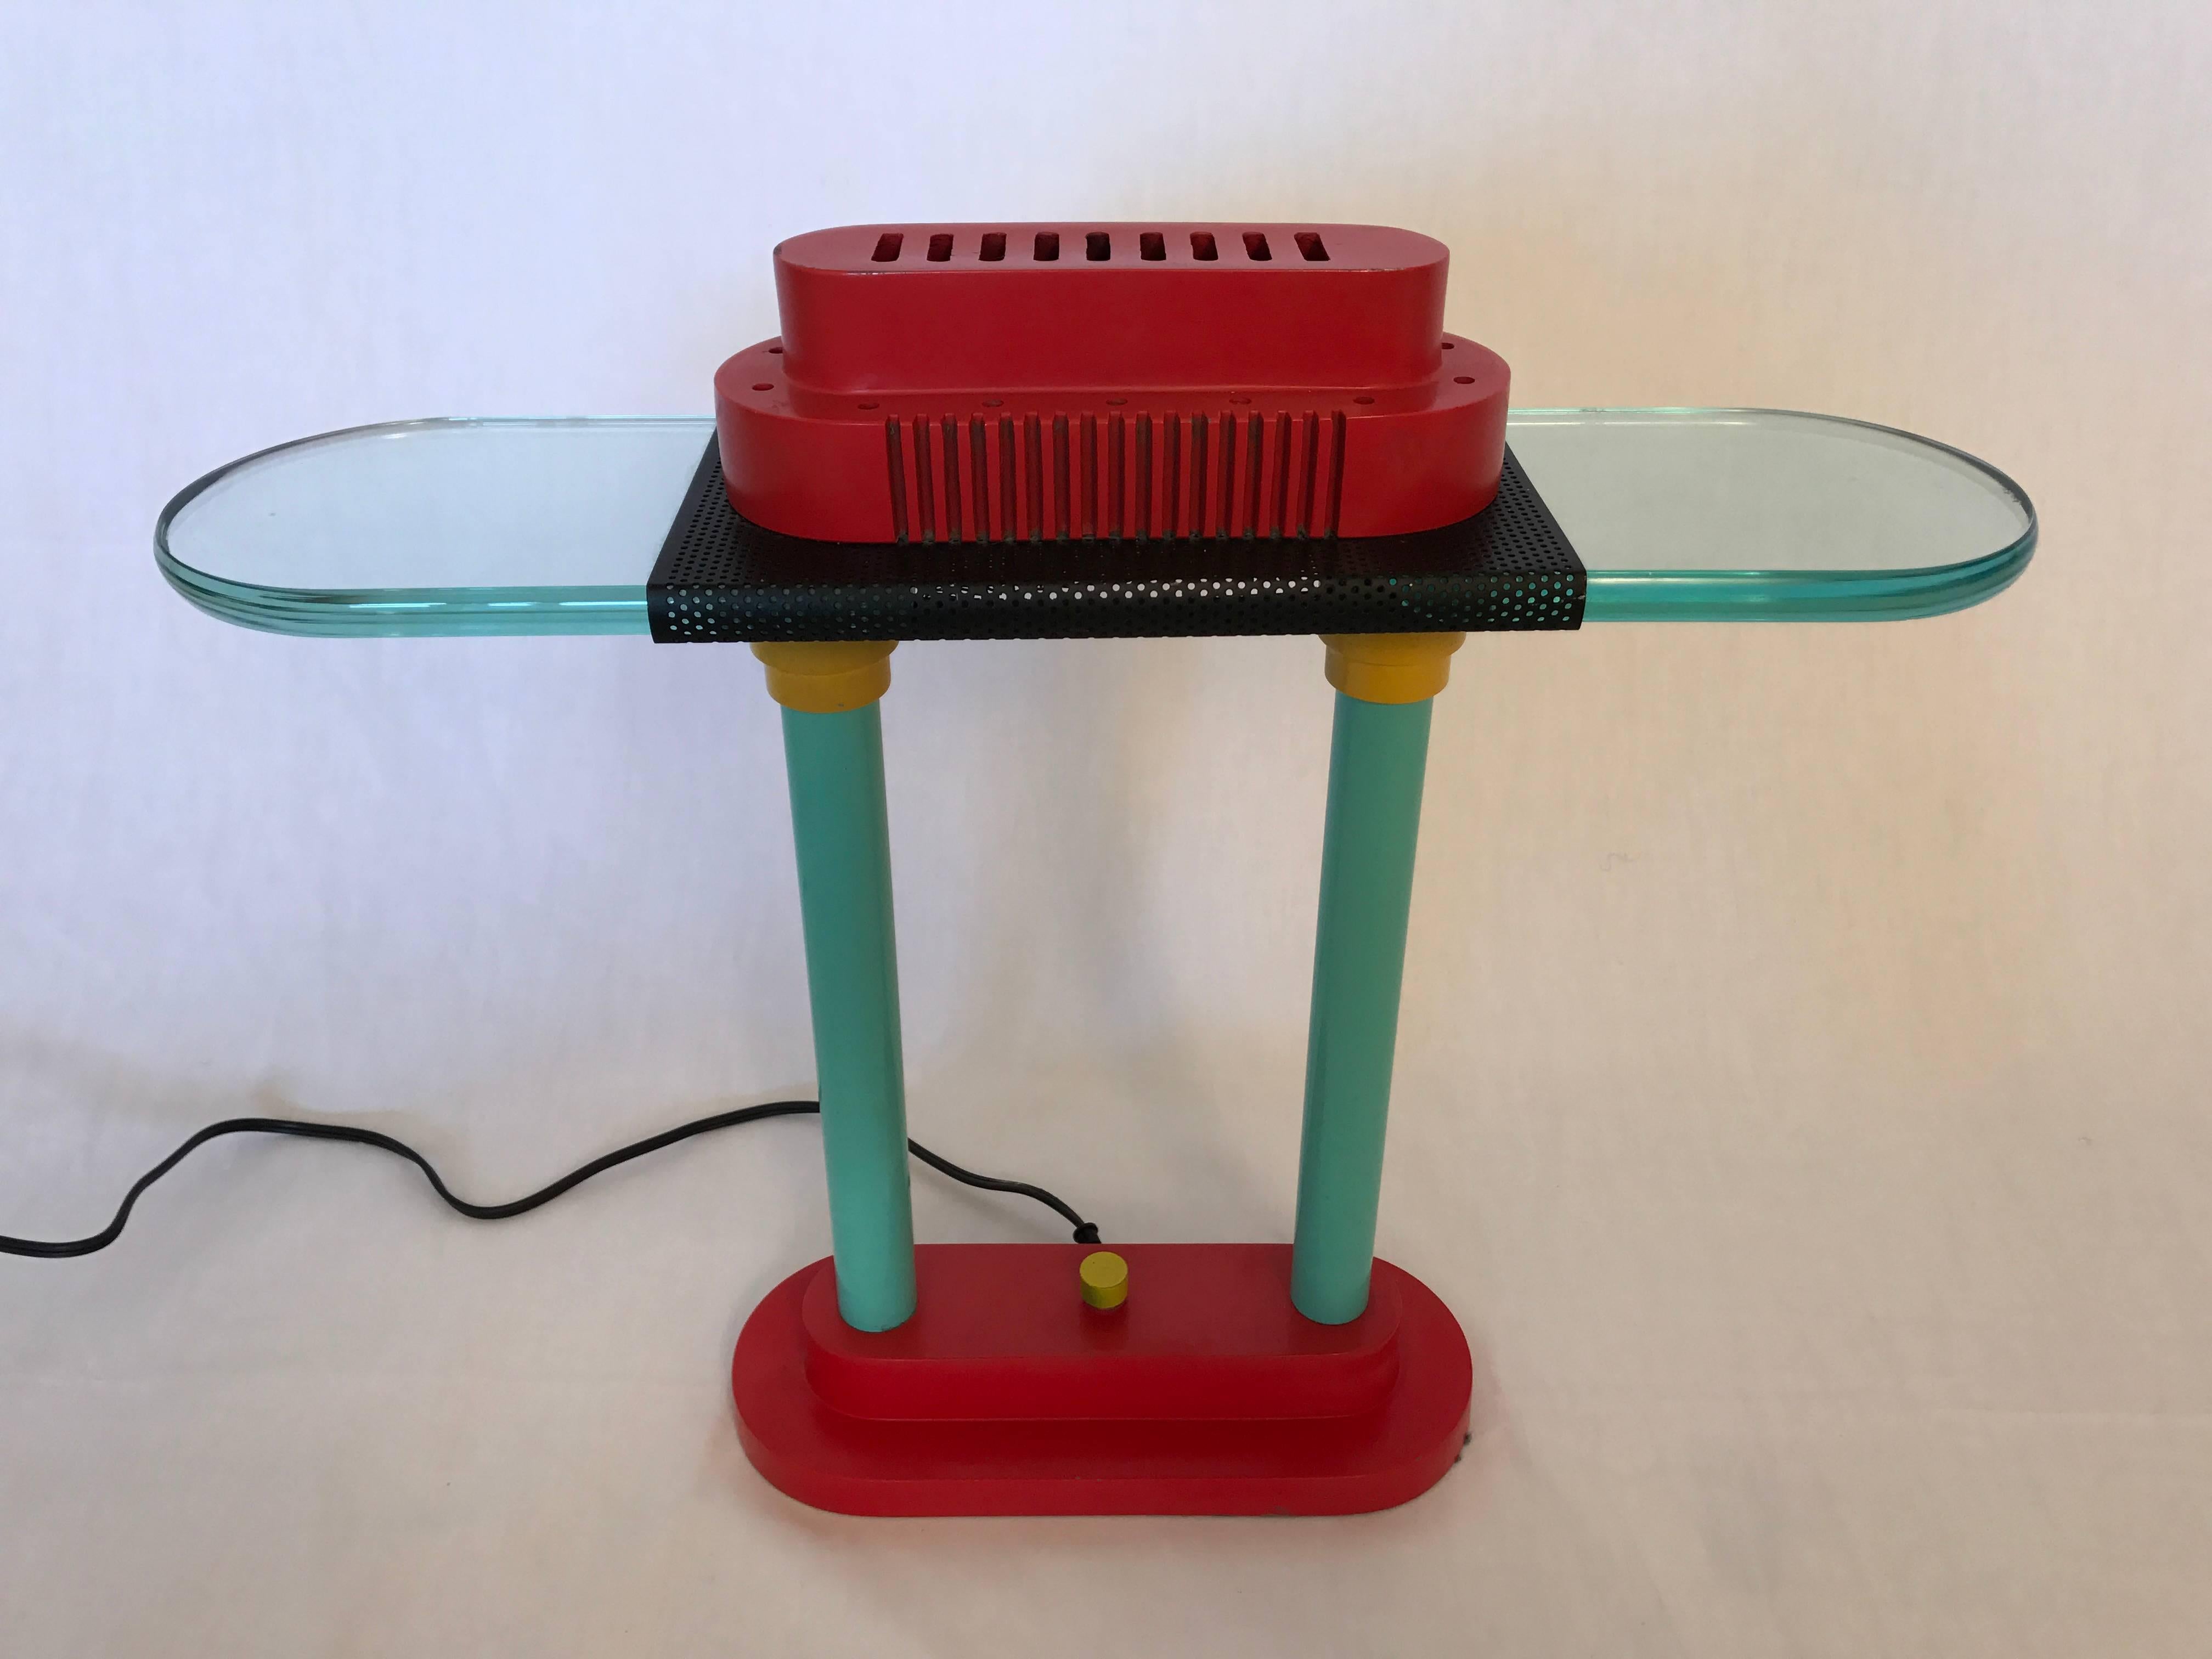 Memphis inspired desk or table lamp by Robert Sonneman for George Kovacs, 1980s.